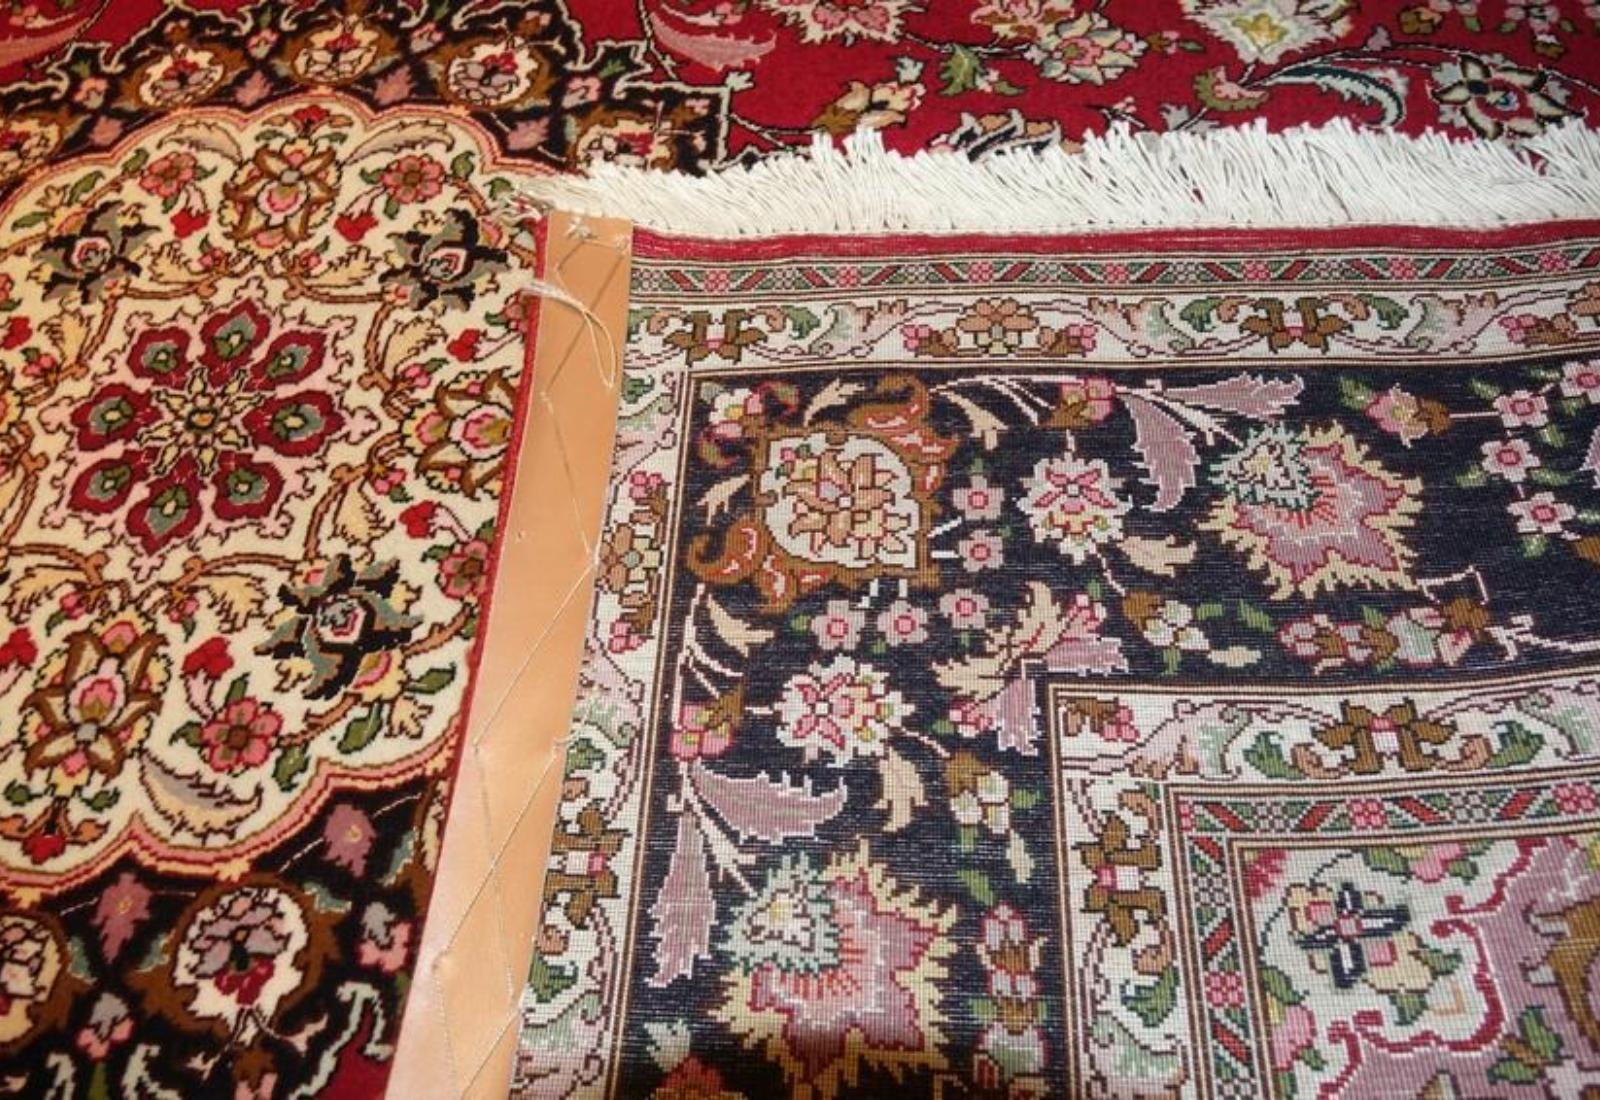 Very fine Persian Tabriz Silk & Wool - 5' 6.1' For Sale 2